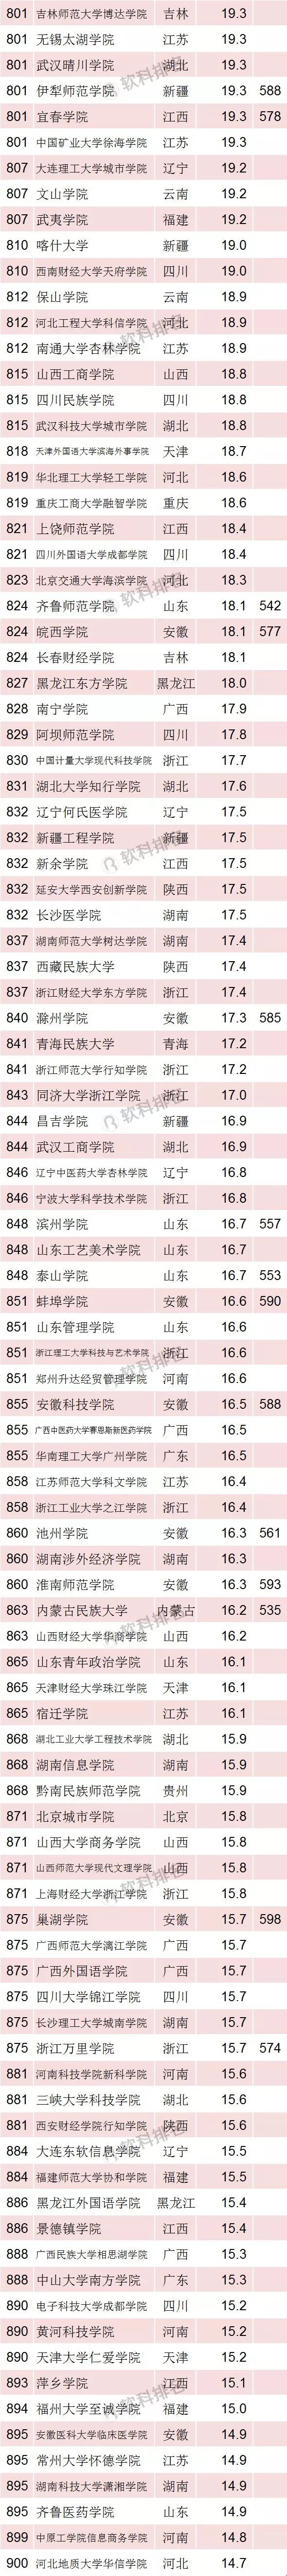 2018中国最好大学排名